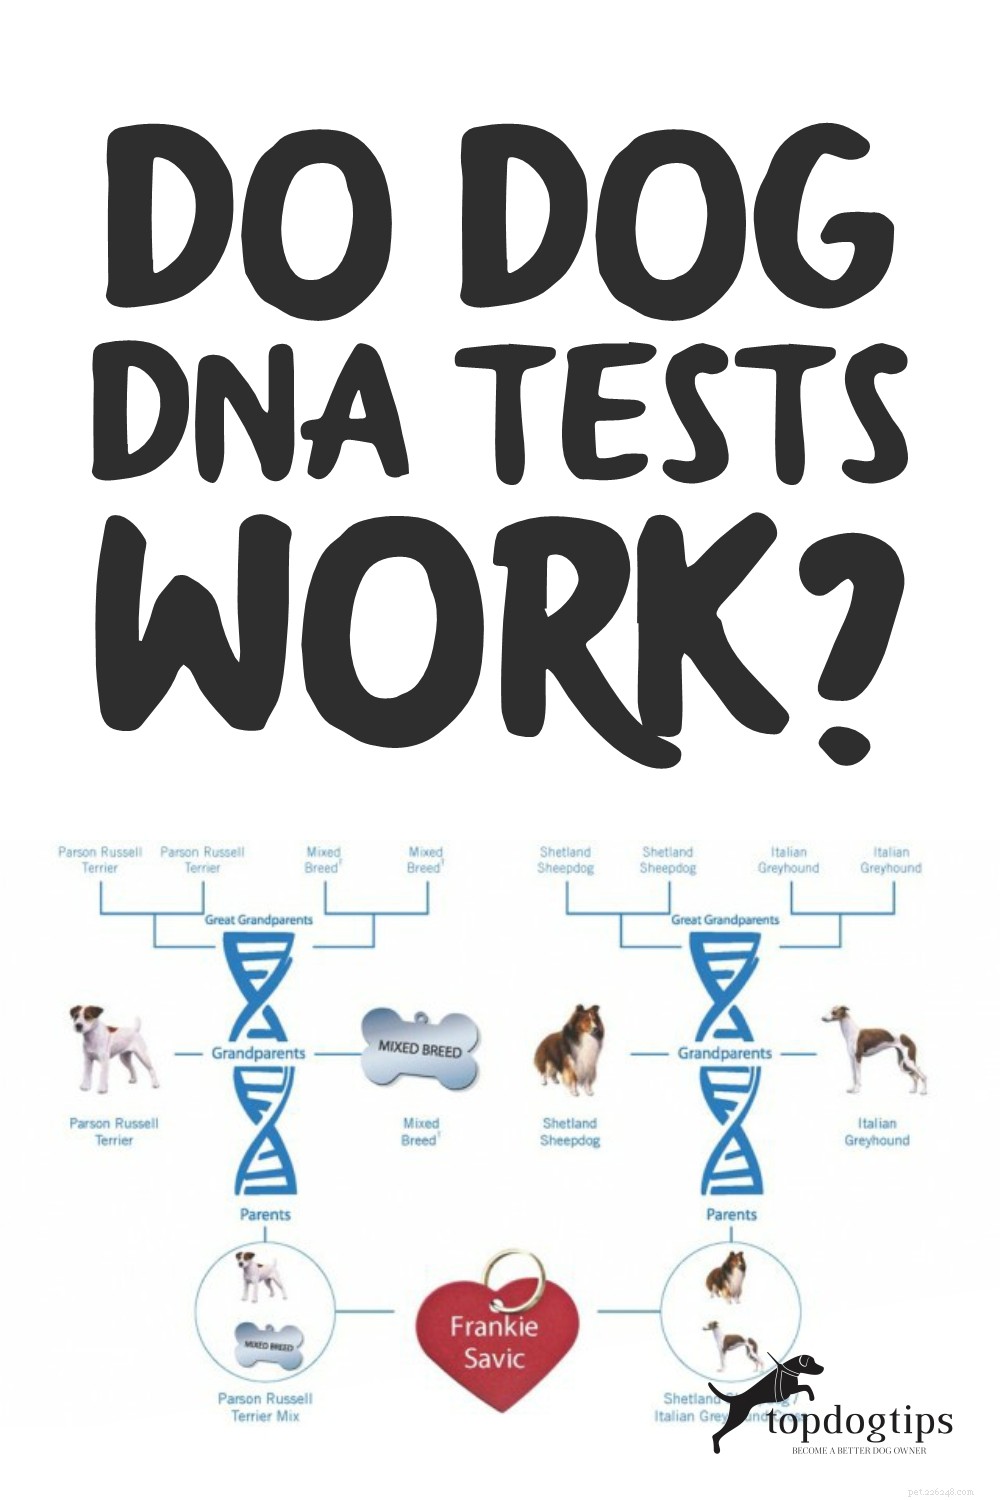 Os testes de DNA para cães funcionam? Quão precisos eles são?